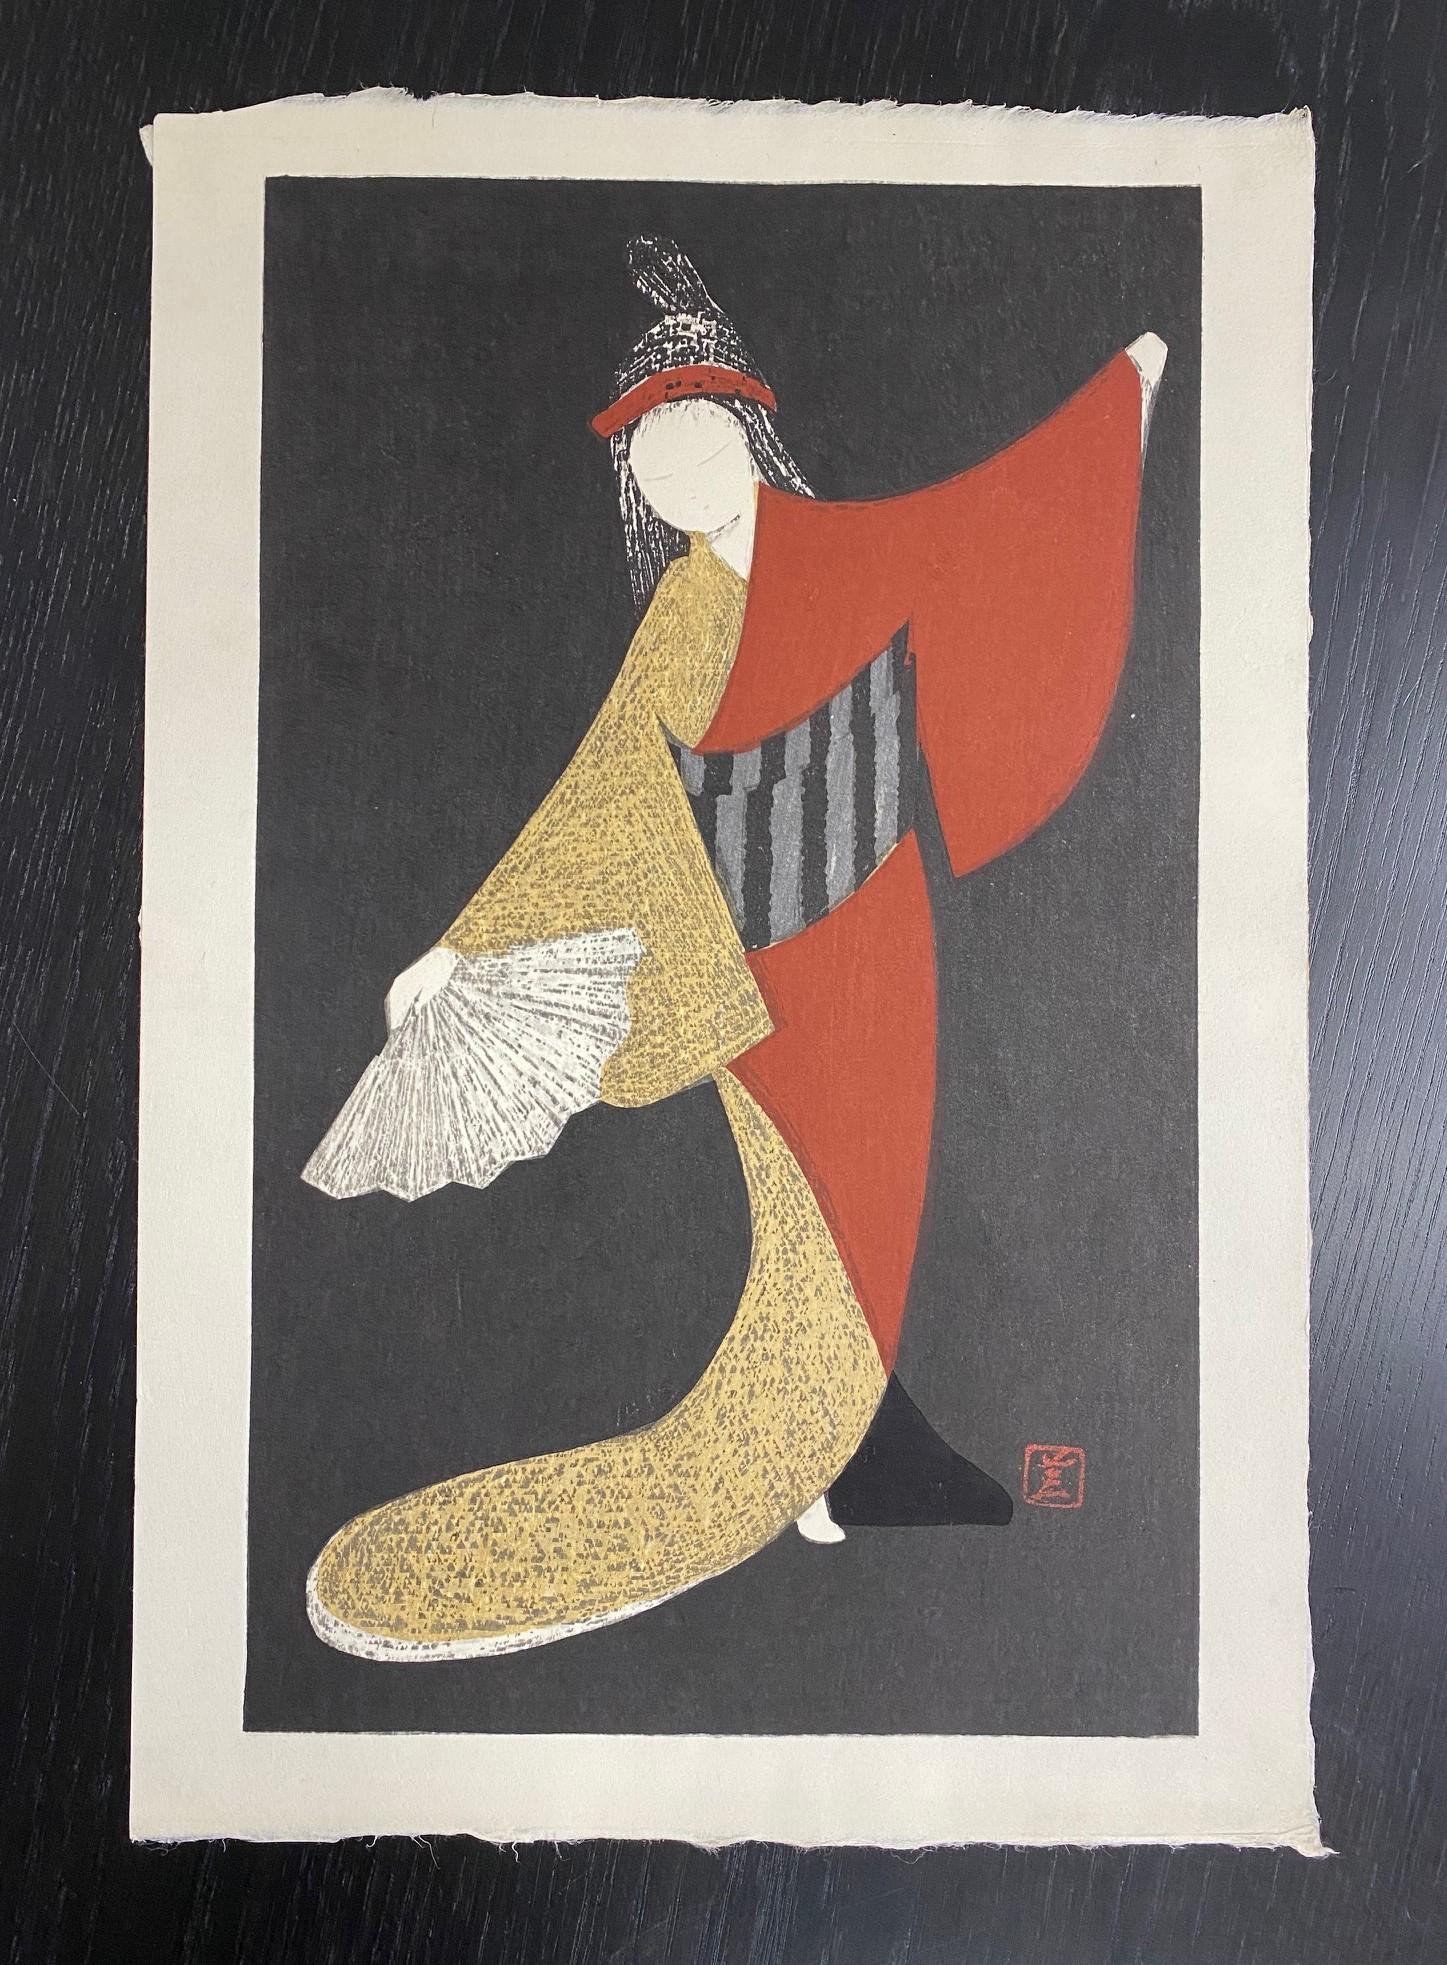 Une belle œuvre du célèbre artiste japonais Kaoru Kawano, connu pour ses représentations fantaisistes de femmes, d'enfants et d'animaux. Sur le plan stylistique, il est l'un des premiers artistes japonais à combiner des éléments de style occidental